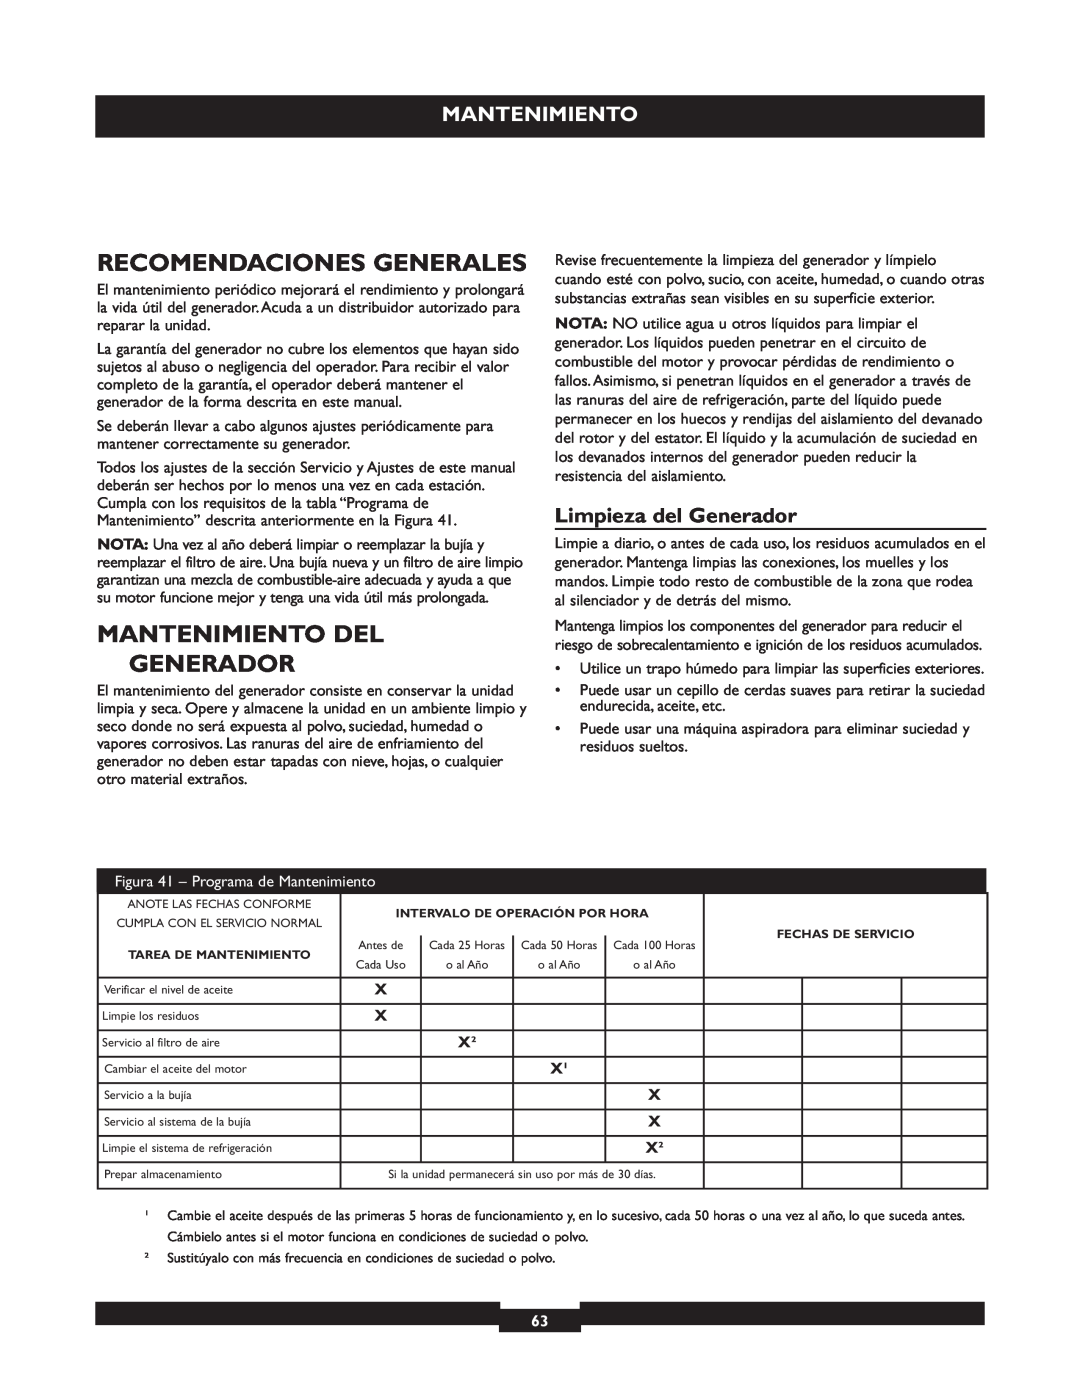 Briggs & Stratton 30236 manuel dutilisation Recomendaciones Generales, Mantenimiento Del, Limpieza del Generador 